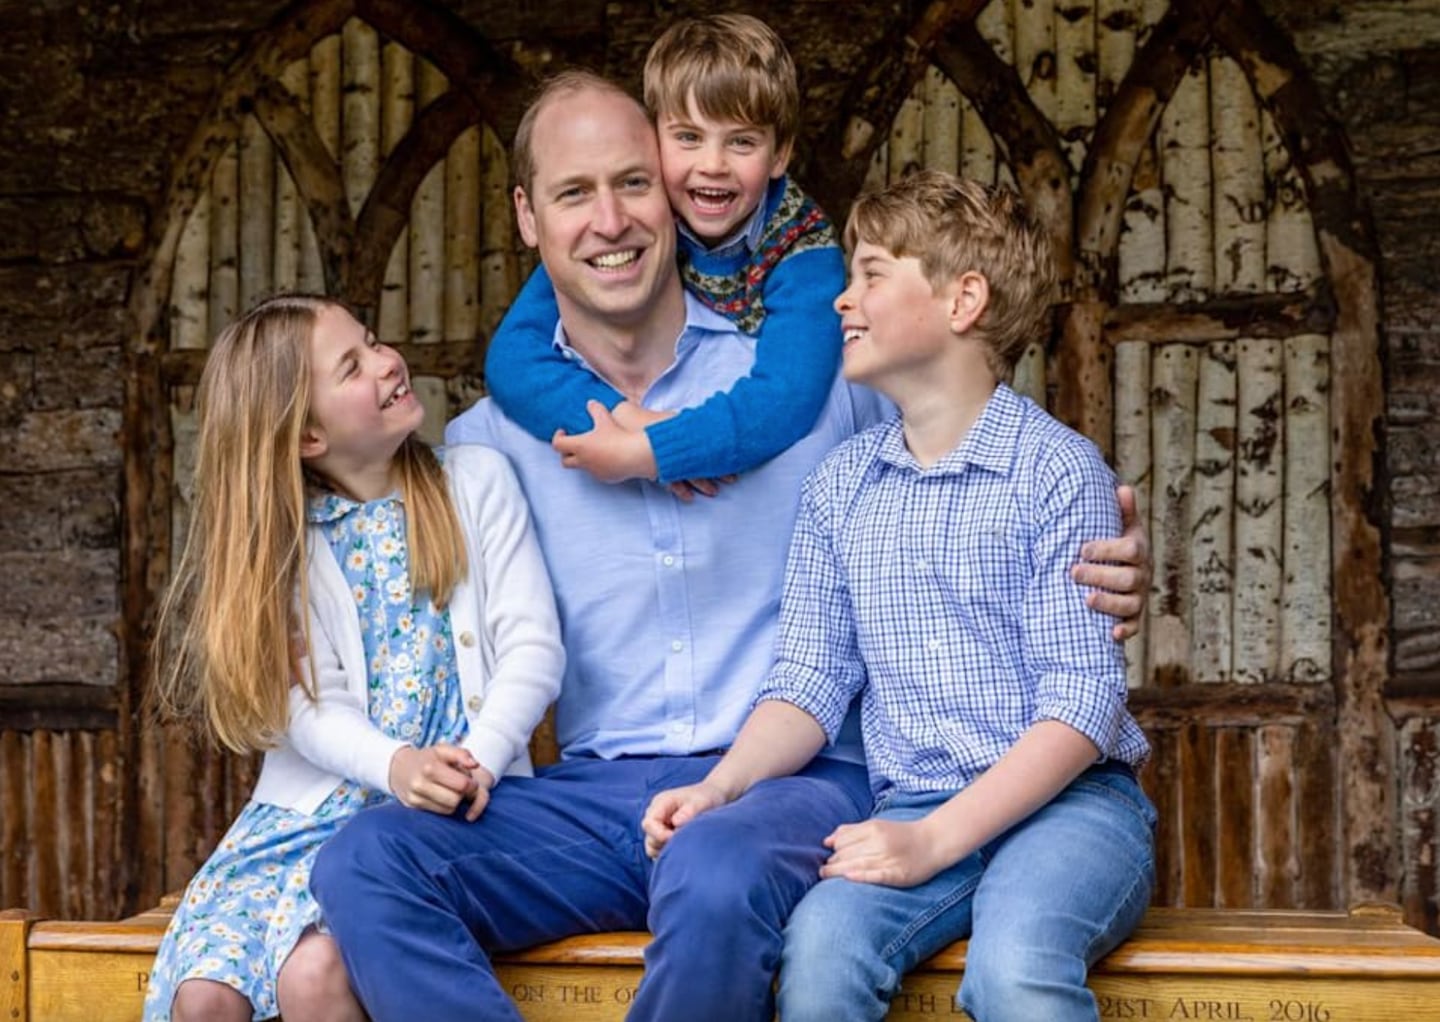 El príncipe William celebra el Día del Padre con adorable fotografía junto a sus hijos, el príncipe George, la princesa Charlotte y el príncipe Louis